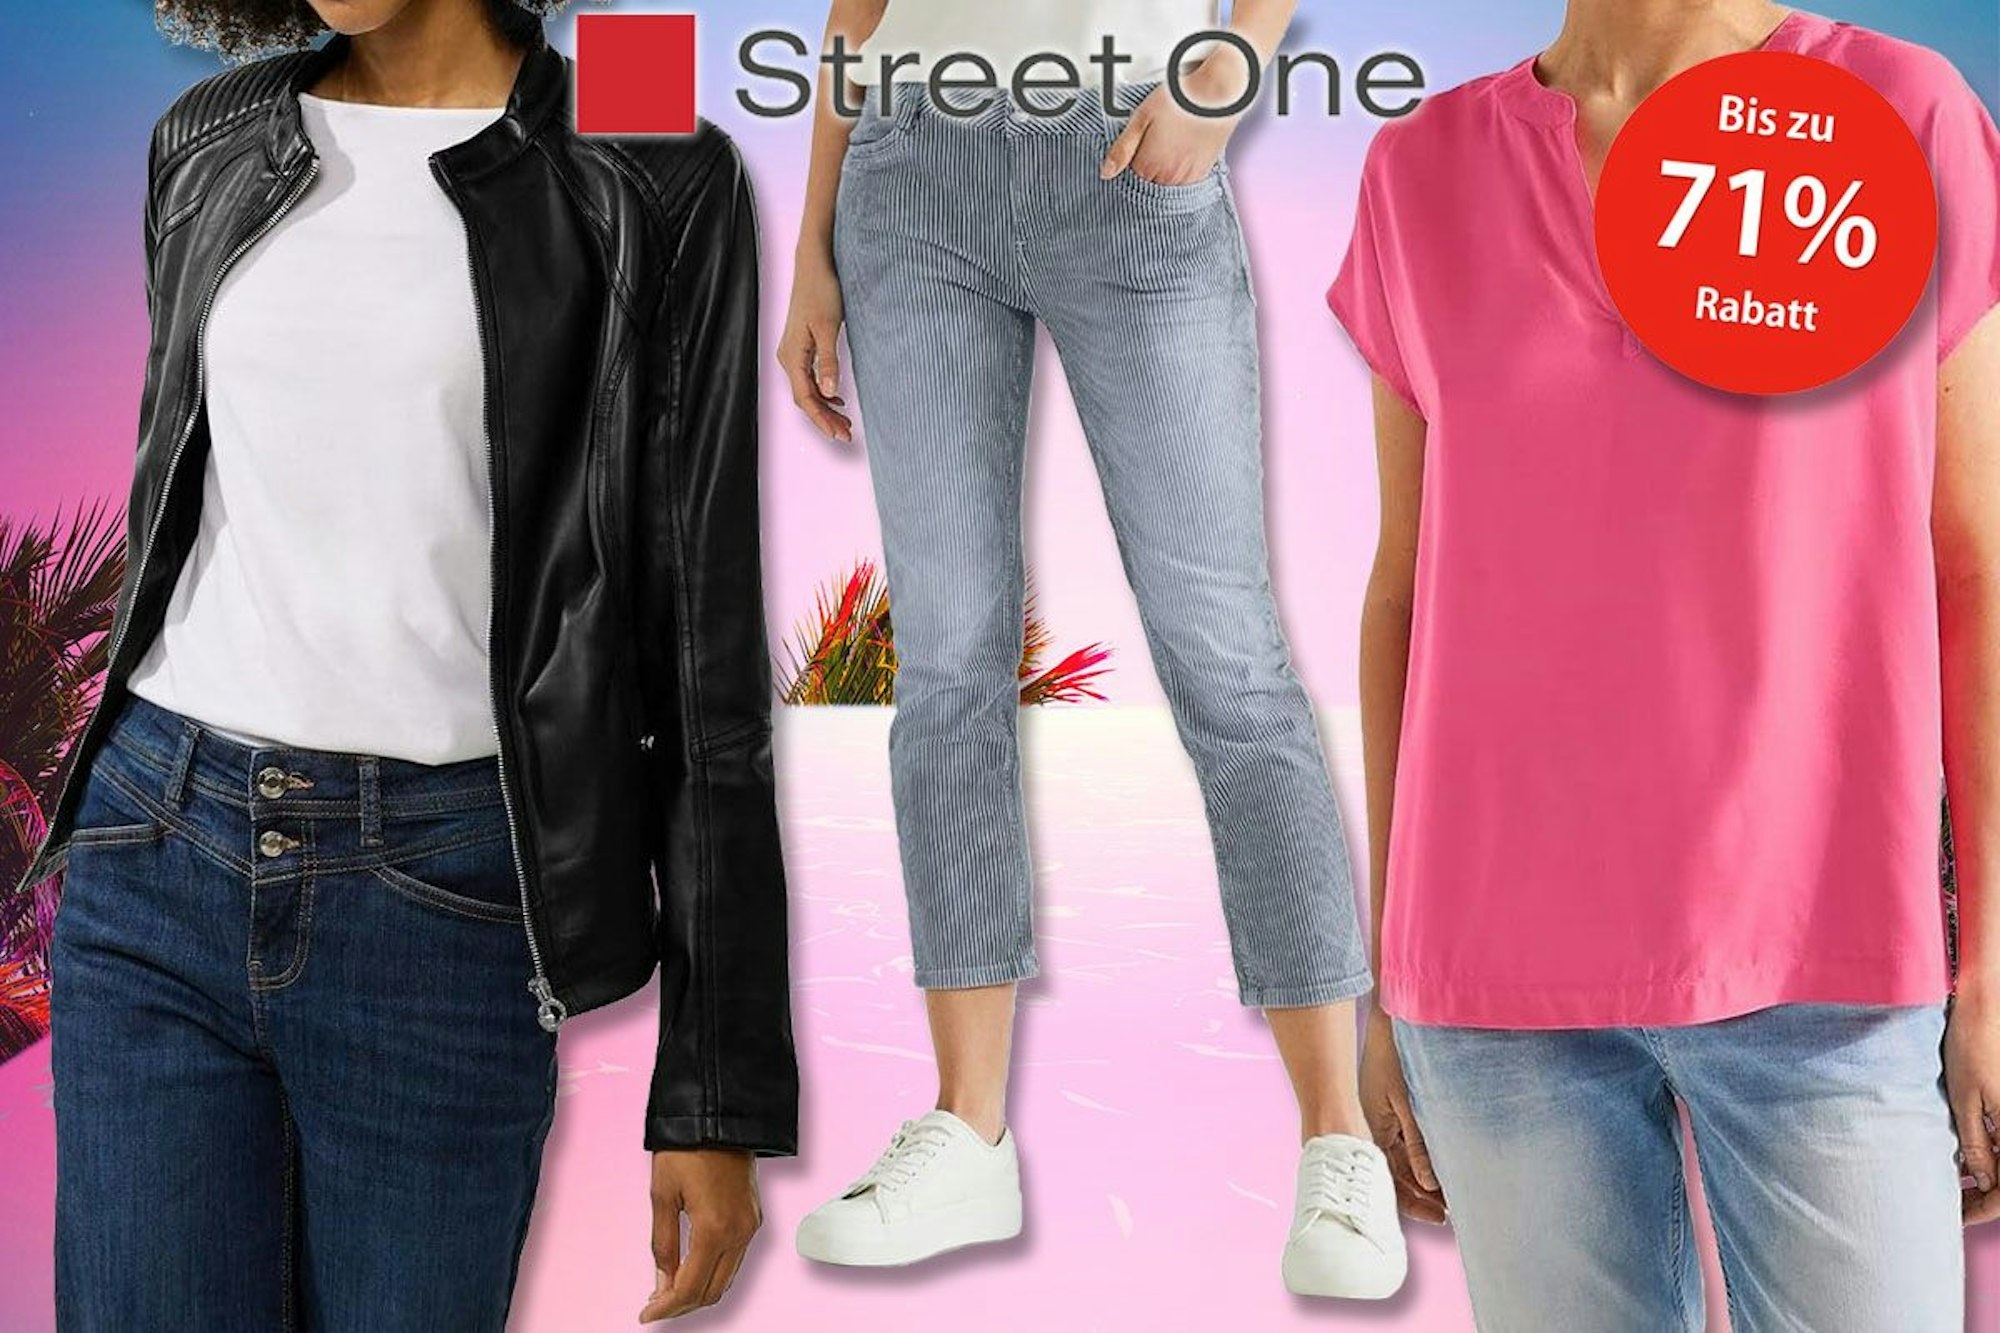 Street One Damenmode Jeans, Shirt, Jacke mit Sommerhintergrund und Logo.